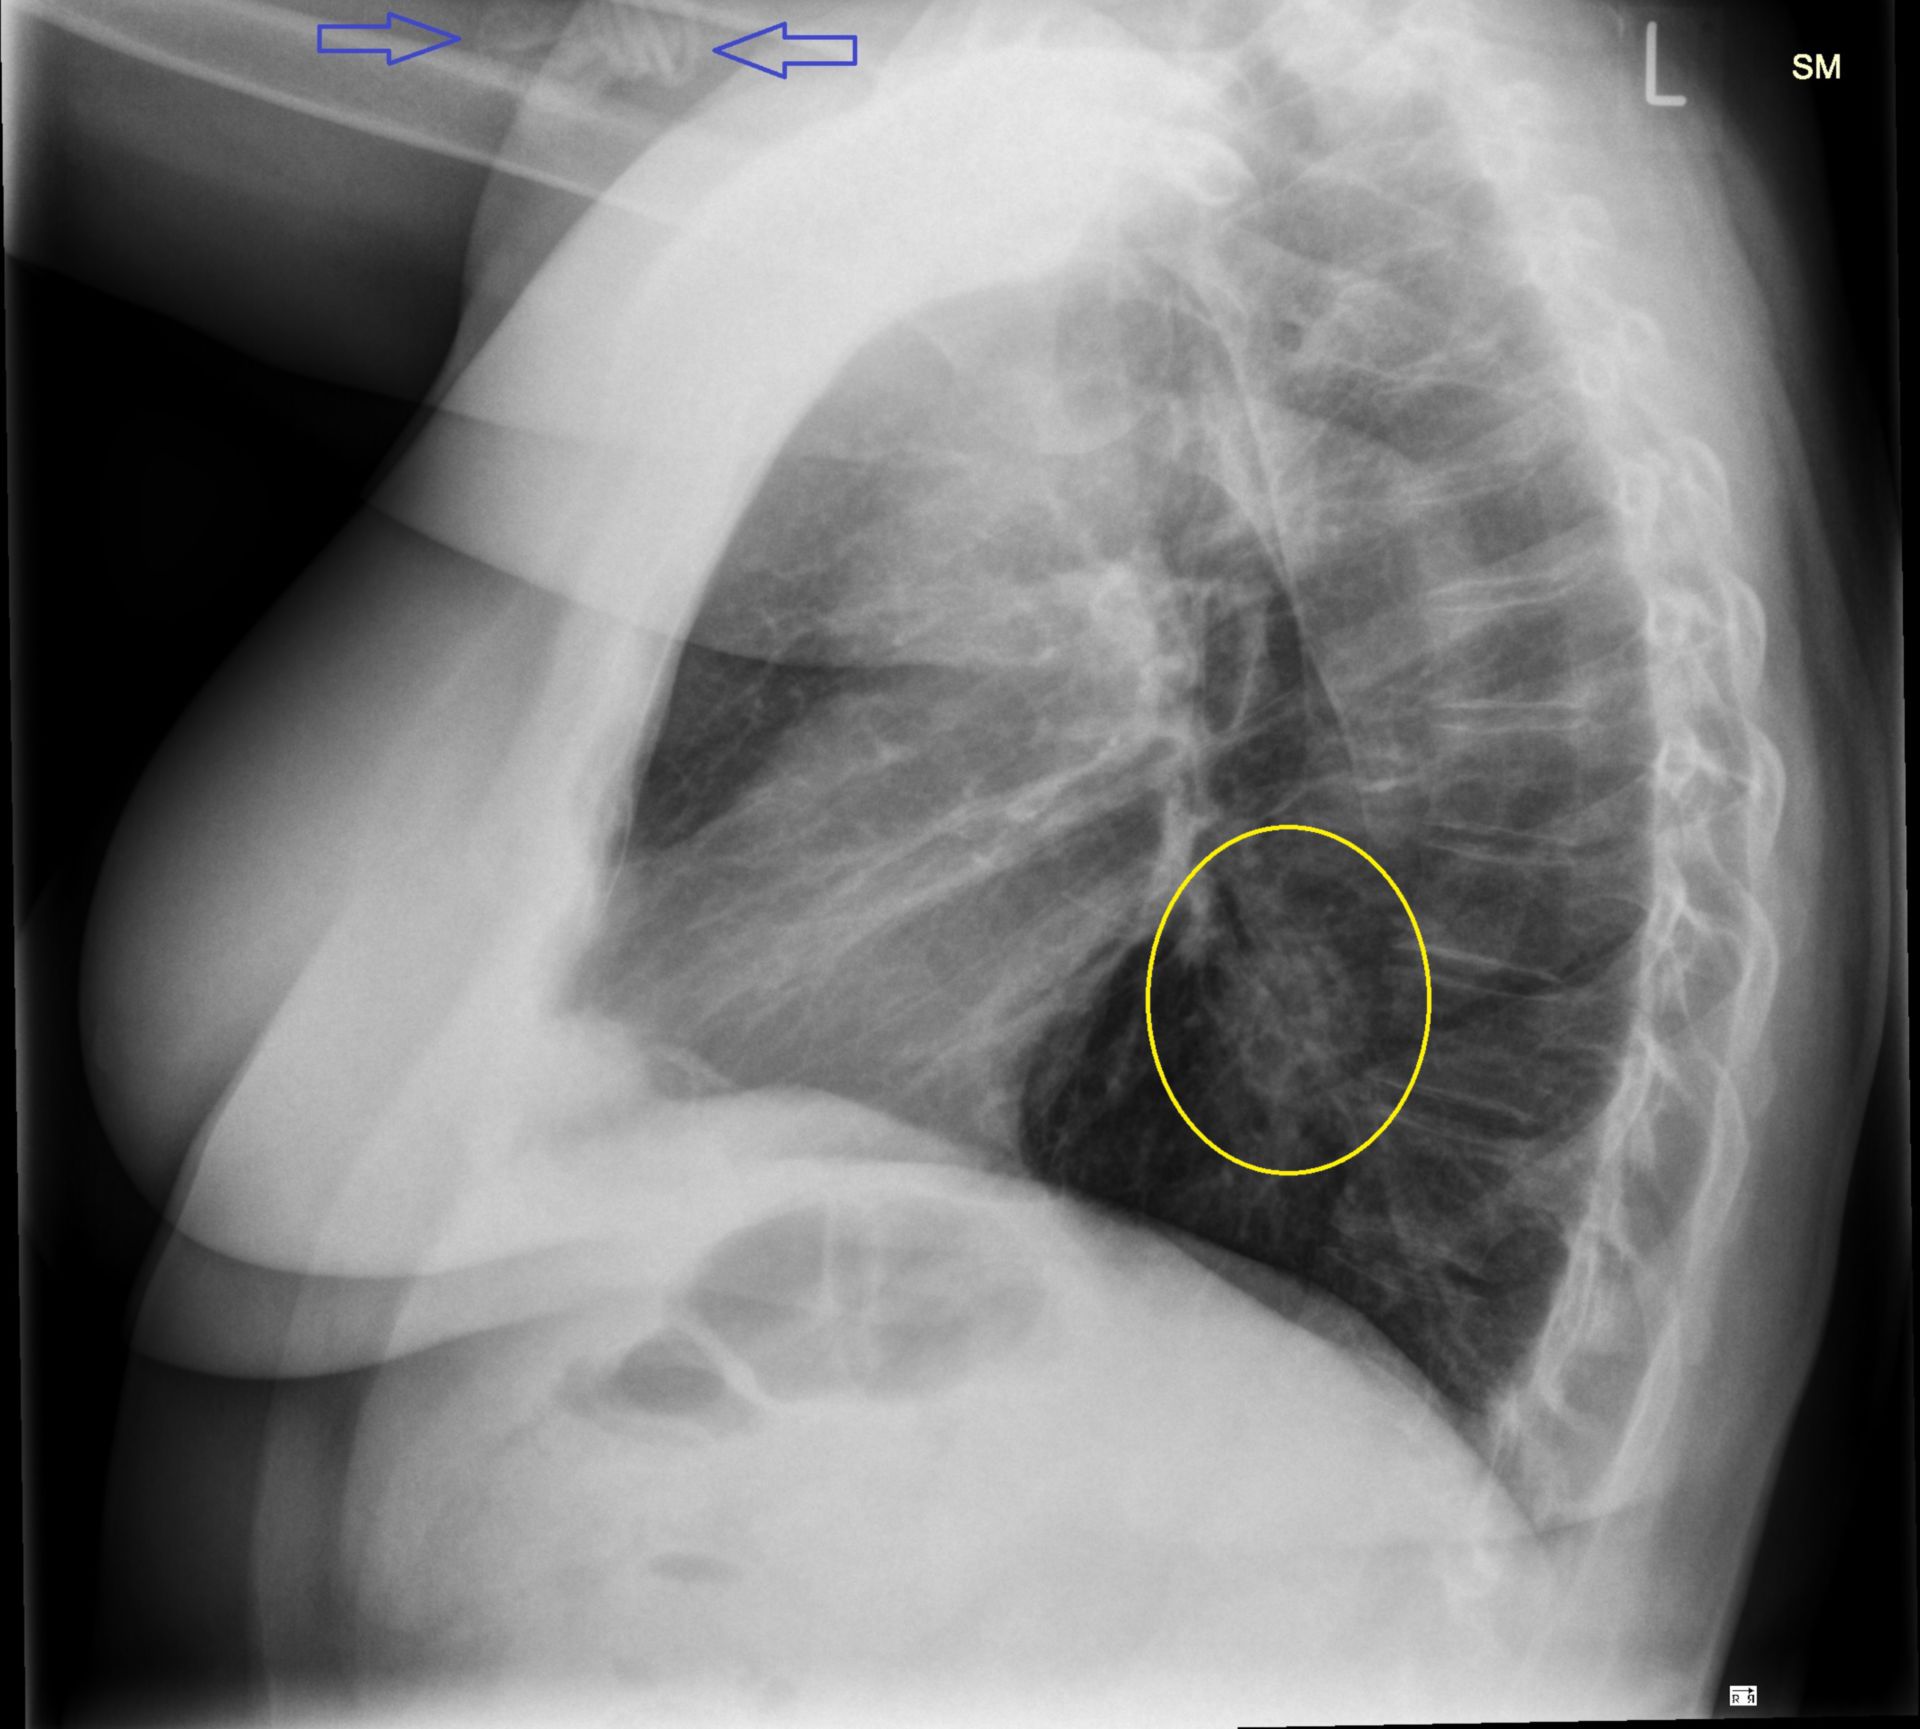 th_seitl1: Röntgen des Thorax von lateral